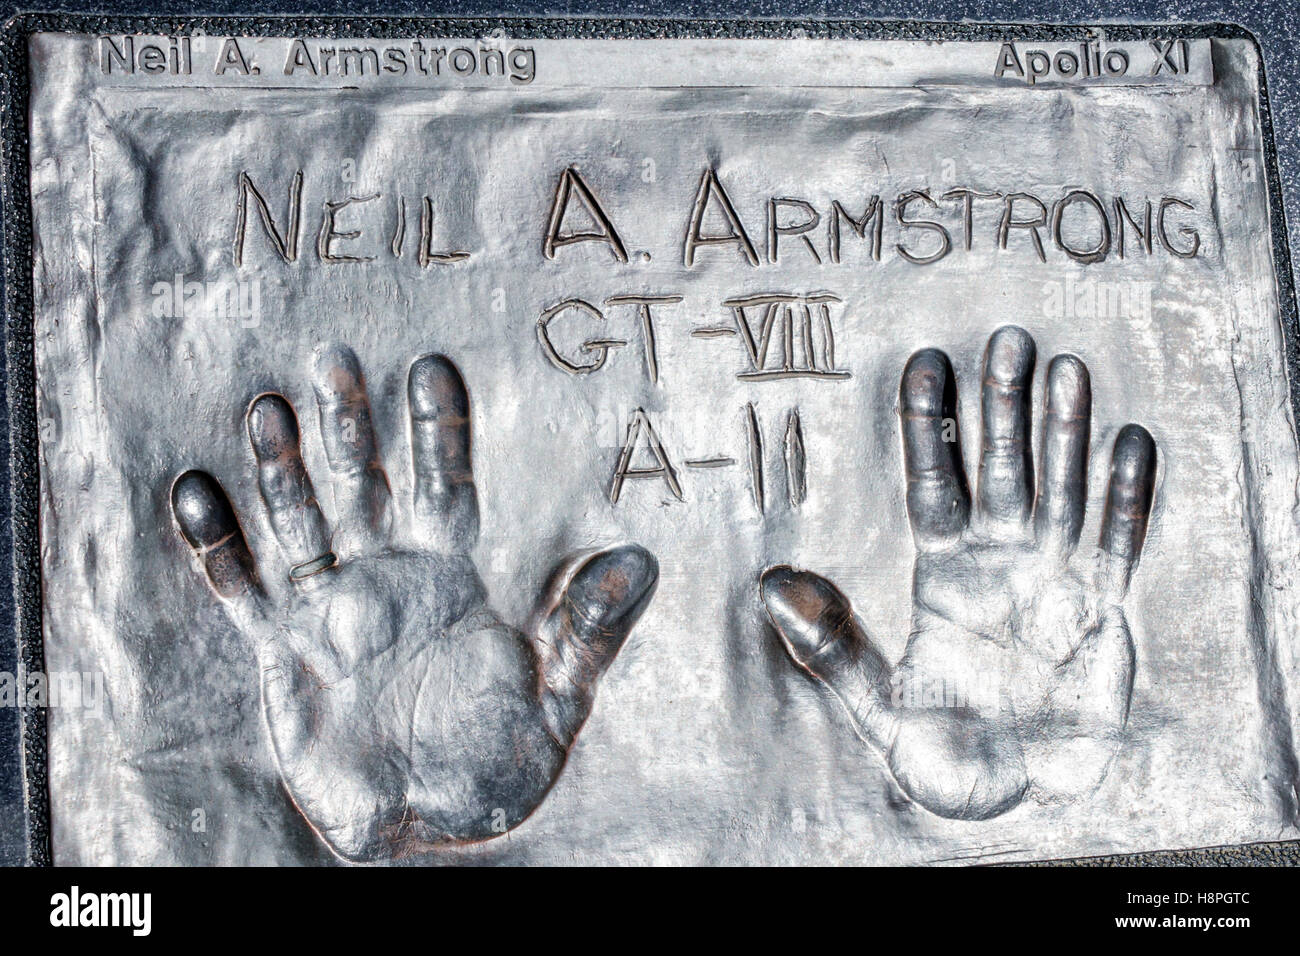 Spazio View Park, memoriale, astronauti, Neil Armstrong, impronte di palma a mano, FL161025083 Foto Stock